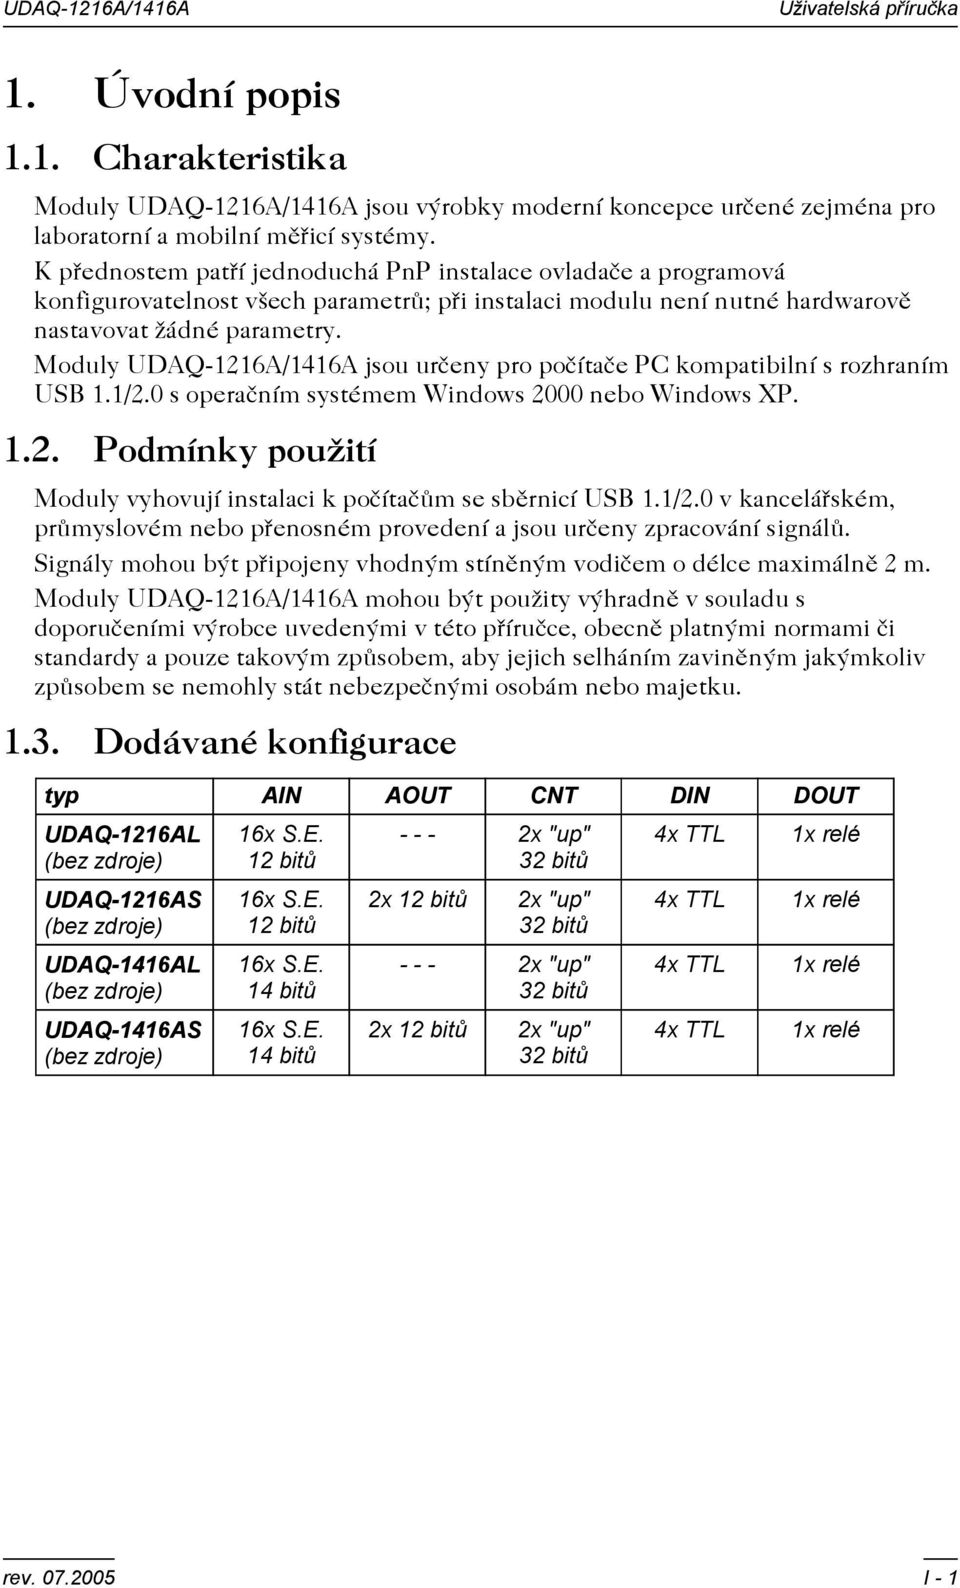 Moduly UDAQ-1216A/1416A jsou urèeny pro poèítaèe PC kompatibilní s rozhraním USB 1.1/2.0 s operaèním systémem Windows 2000 nebo Windows XP. 1.2. Podmínky použití Moduly vyhovují instalaci k poèítaèùm se sbìrnicí USB 1.